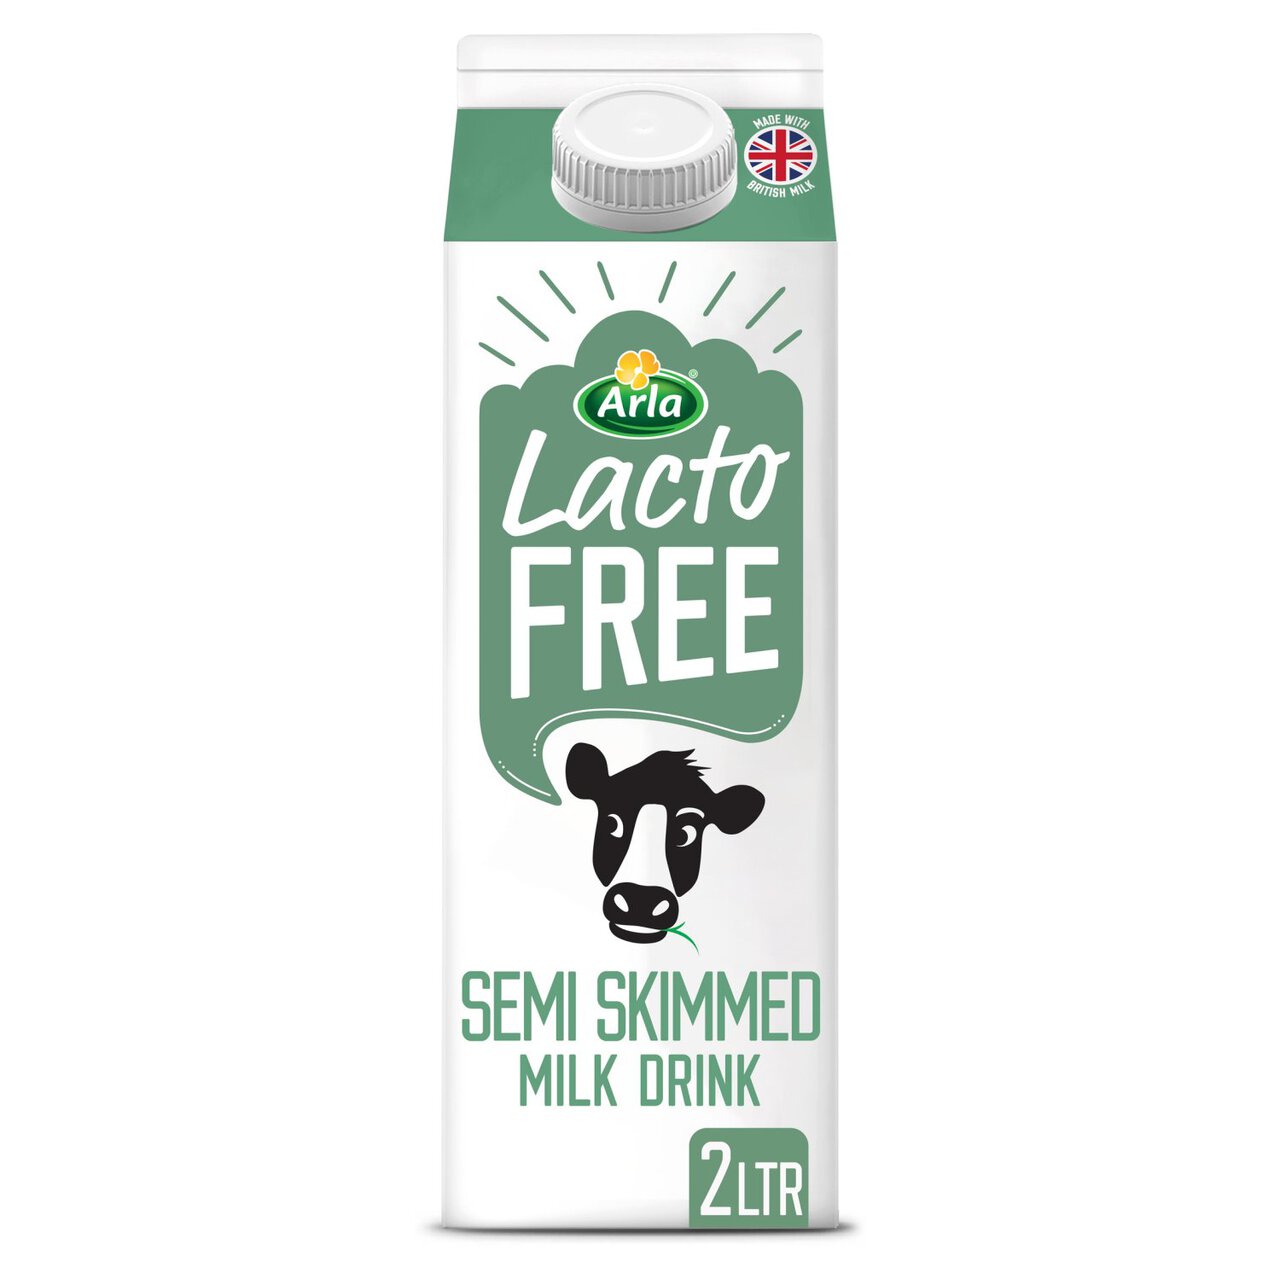 Arla LactoFREE Semi Skimmed Milk Drink 2l